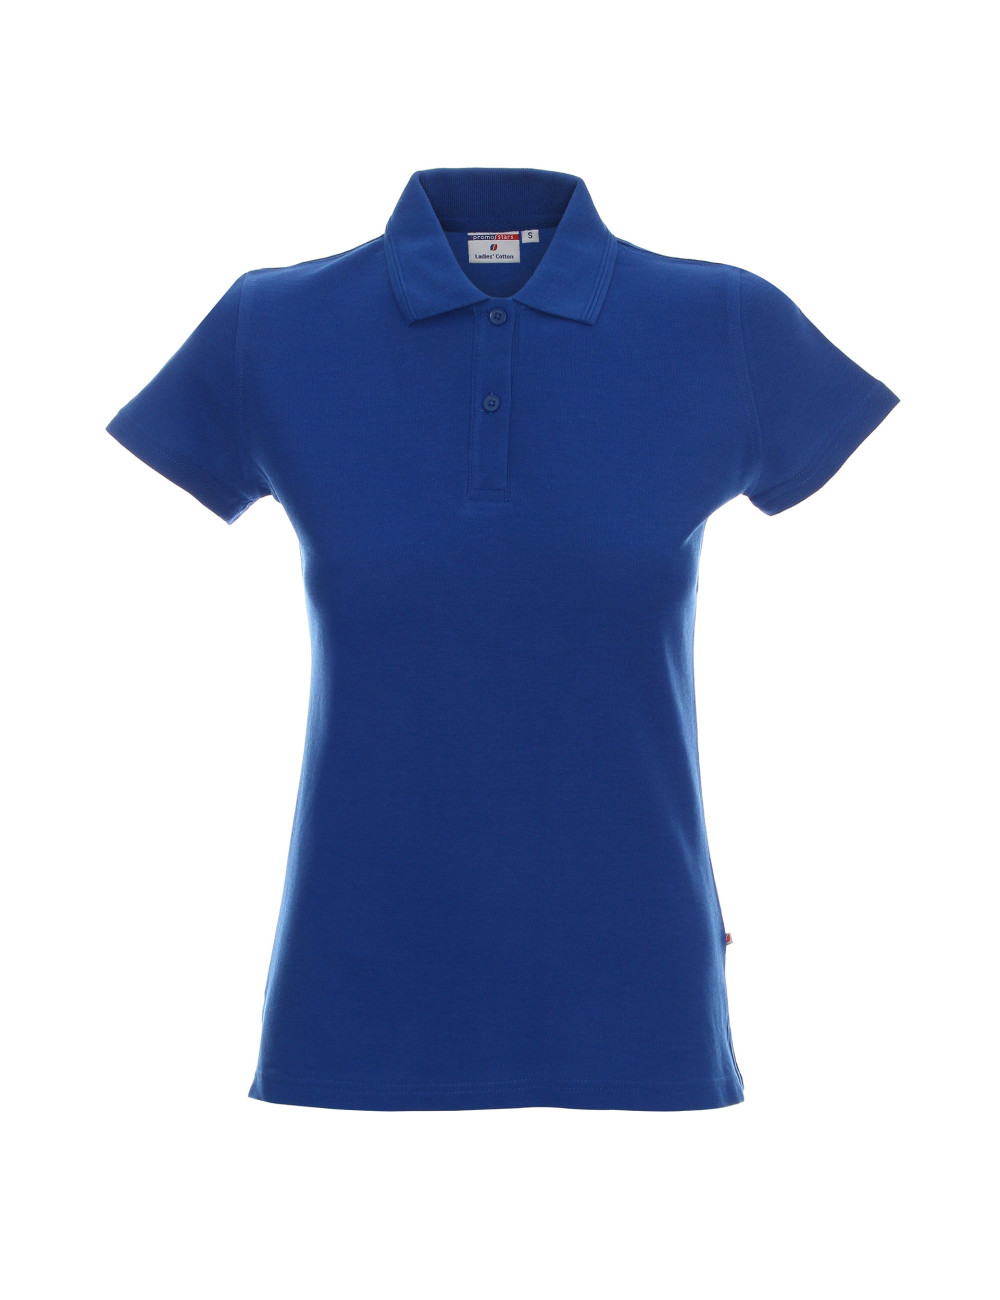 Damen-Poloshirt aus Baumwolle in Kornblumenblau von Promostars